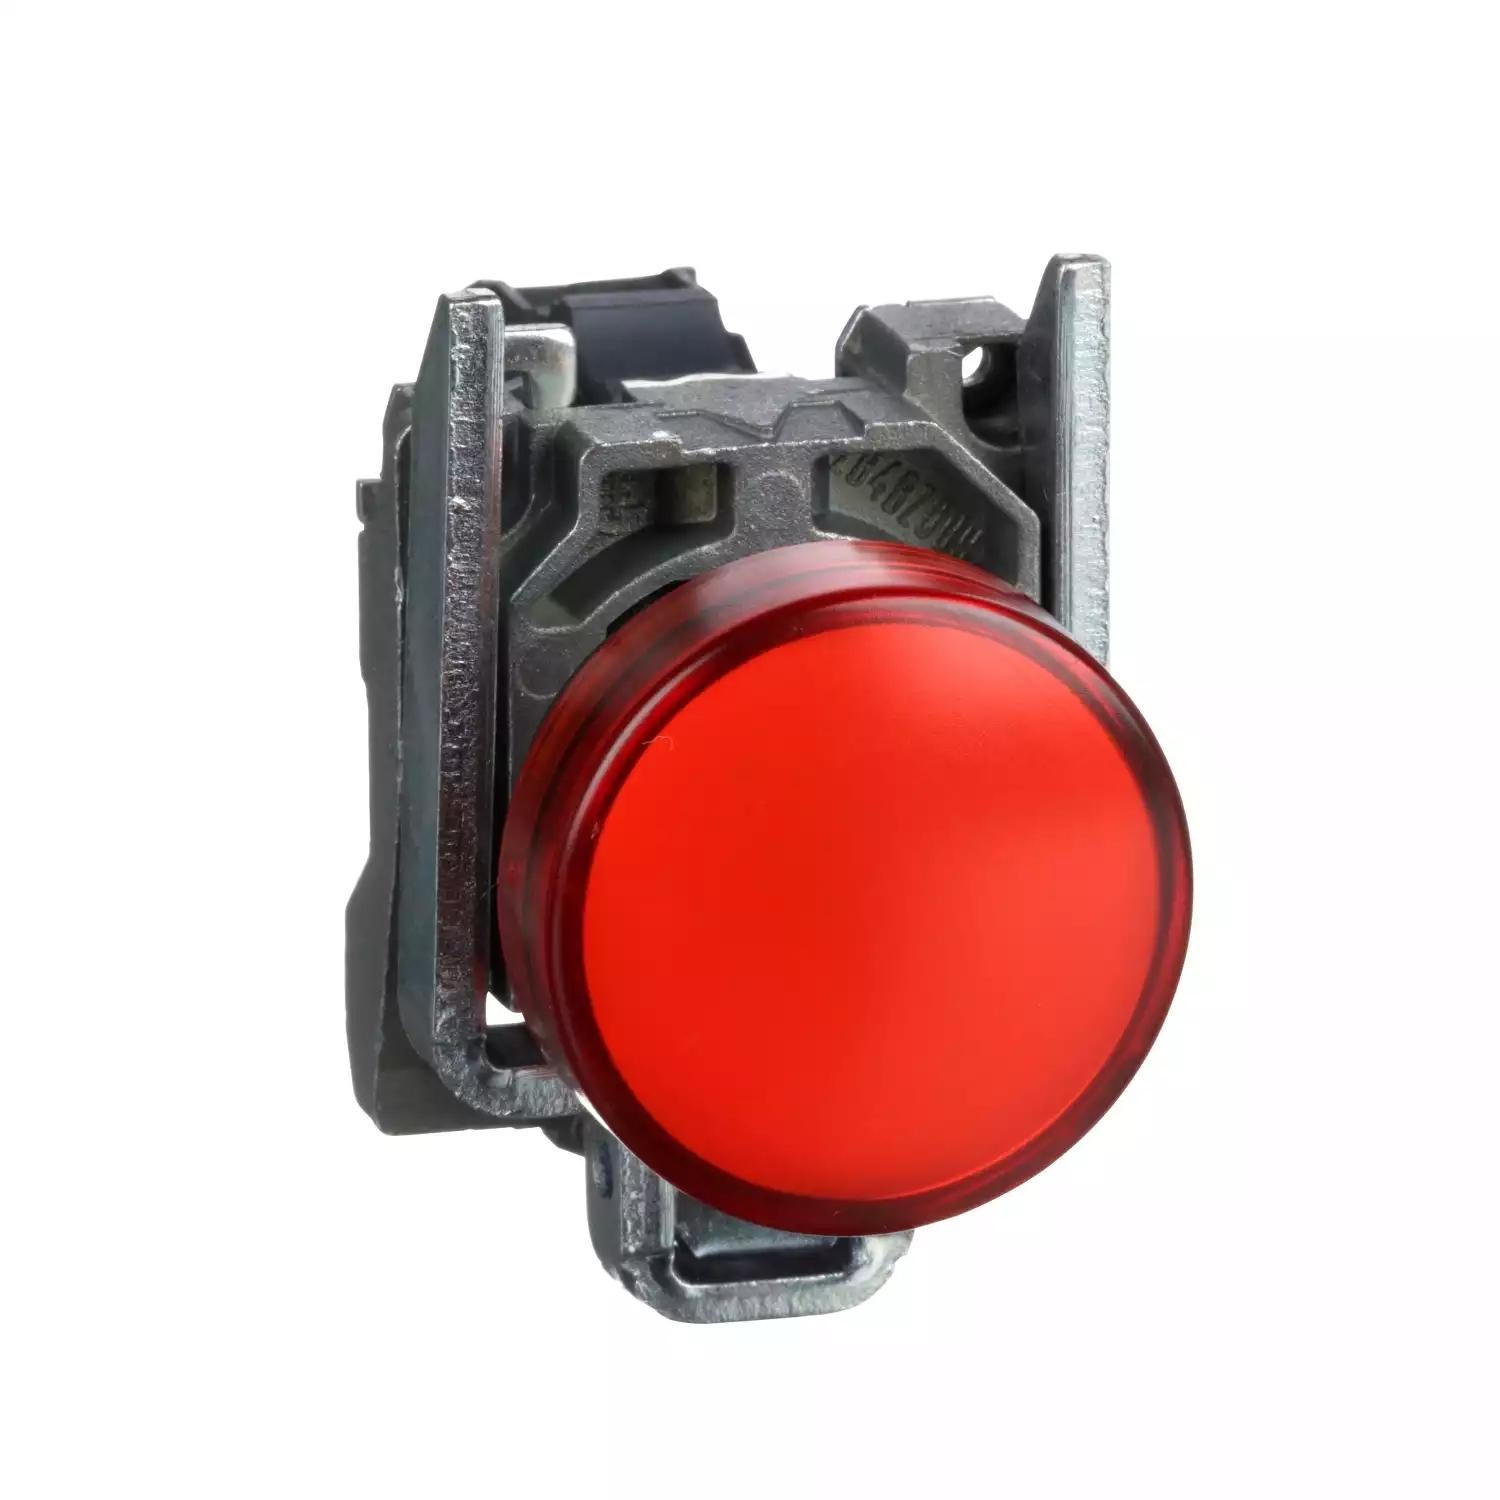 Harmony XB4, Pilot light, metal, red, Ø22, plain lens with integral LED, 110…120 VAC